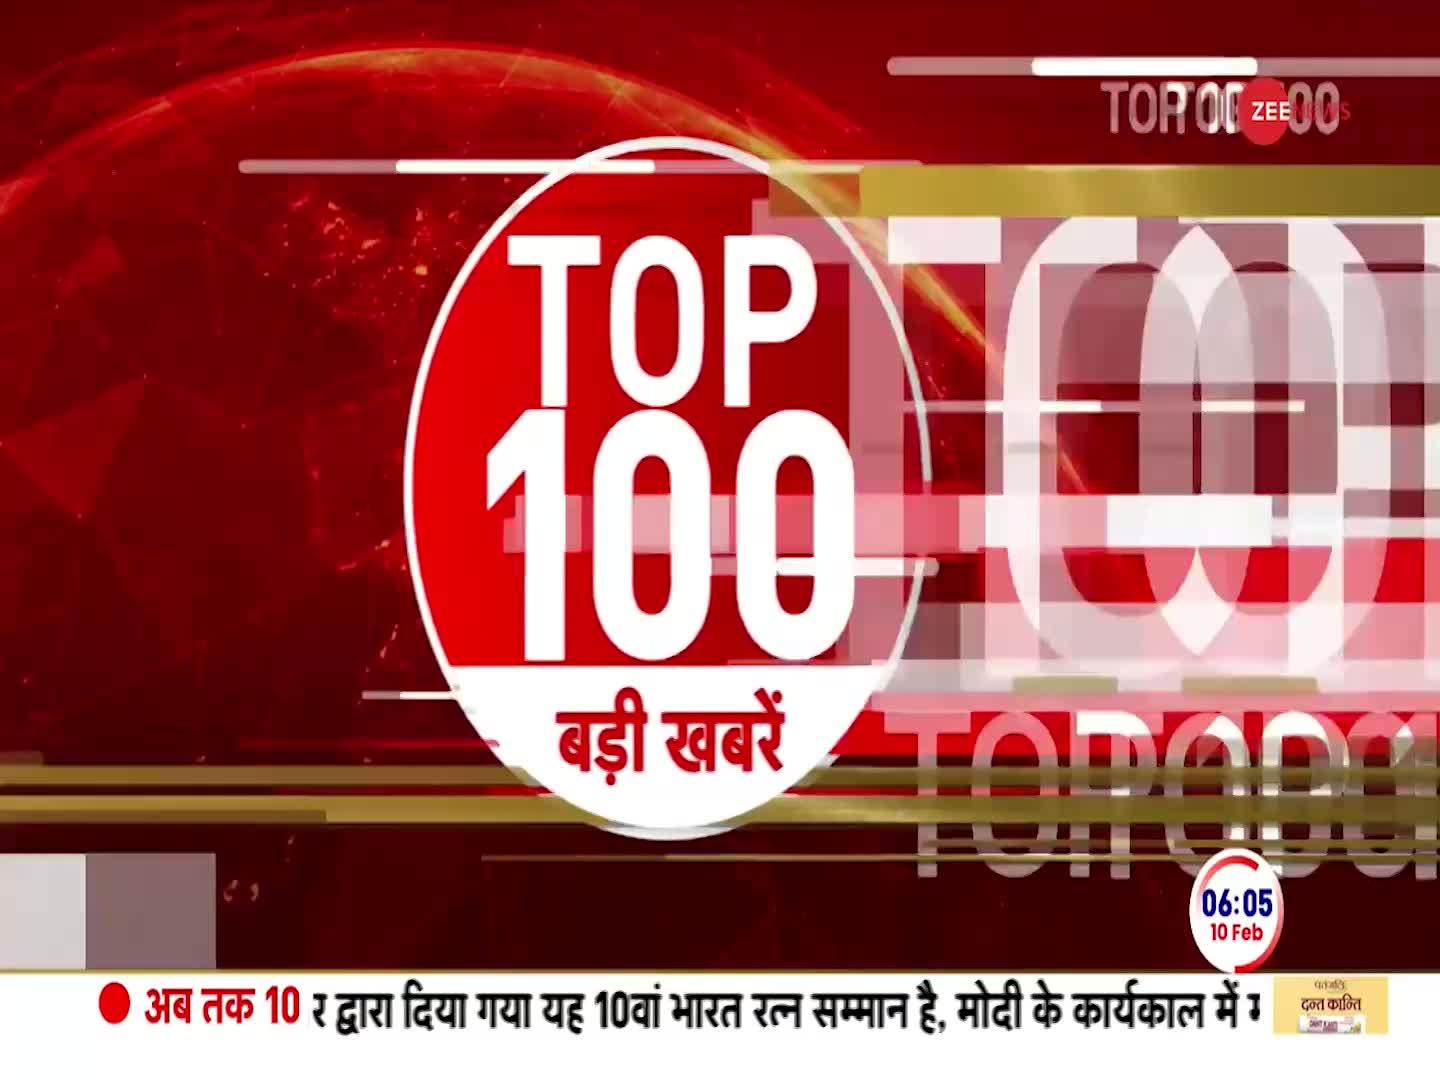 Top 100 News: देखें अभी की 100 बड़ी खबरें फटाफट | Ayodhya Ram Temple